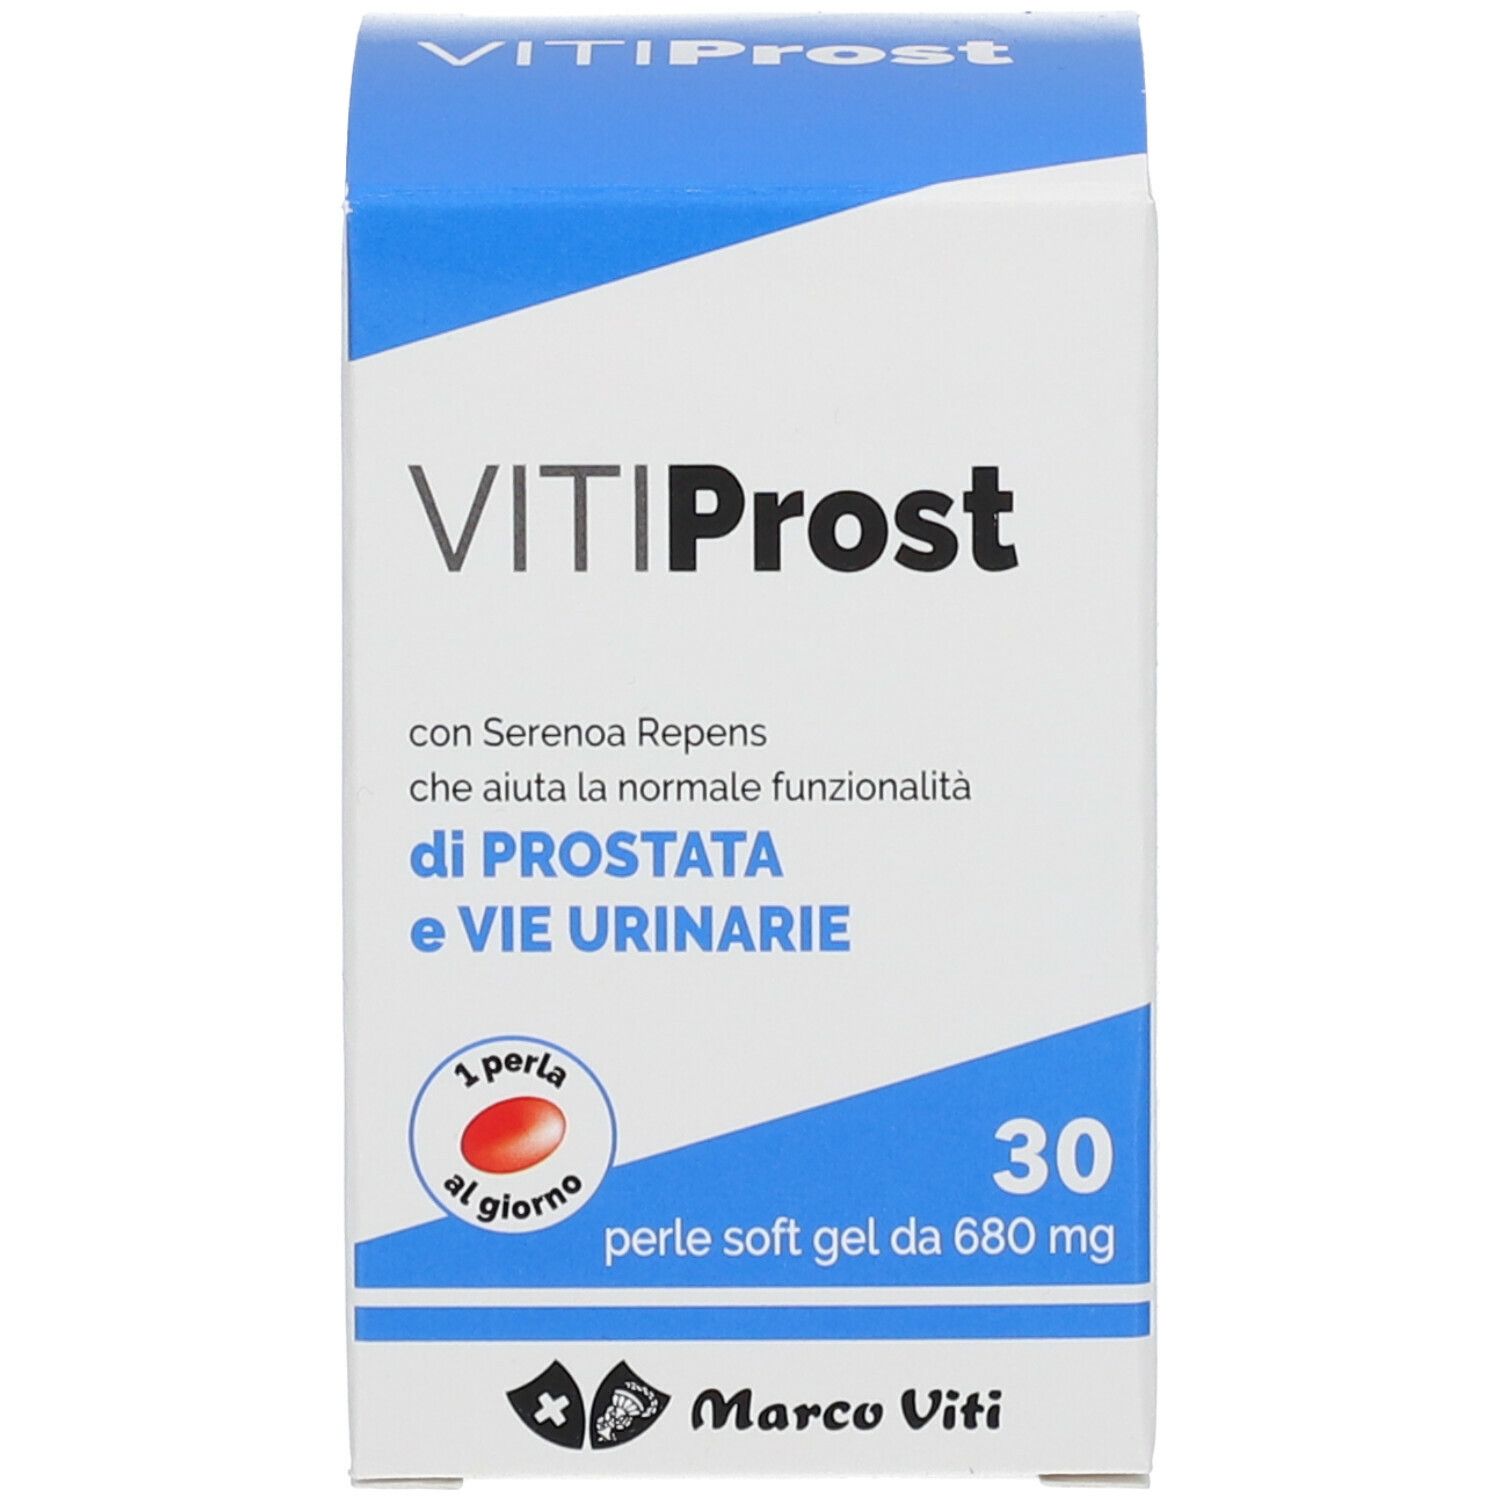 VitiProst